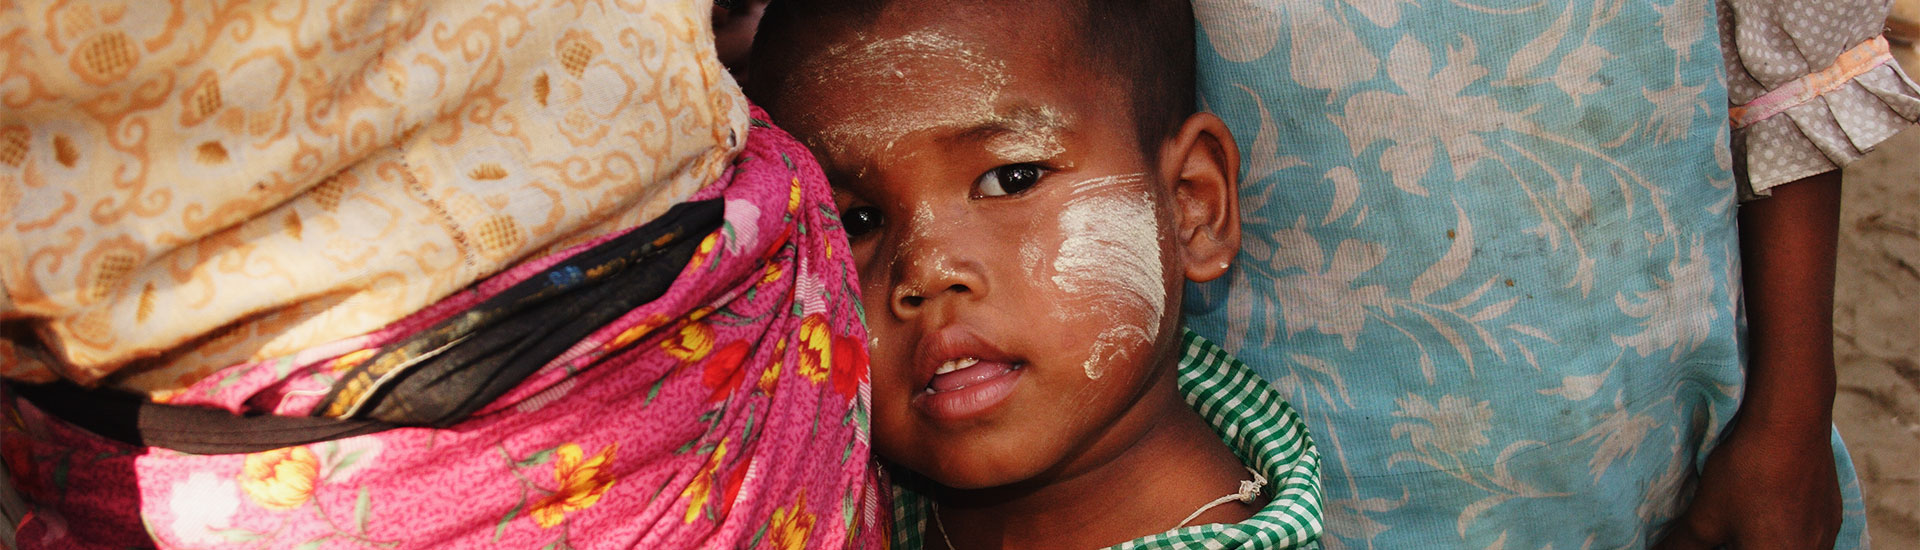 Ребенок в Мьянме